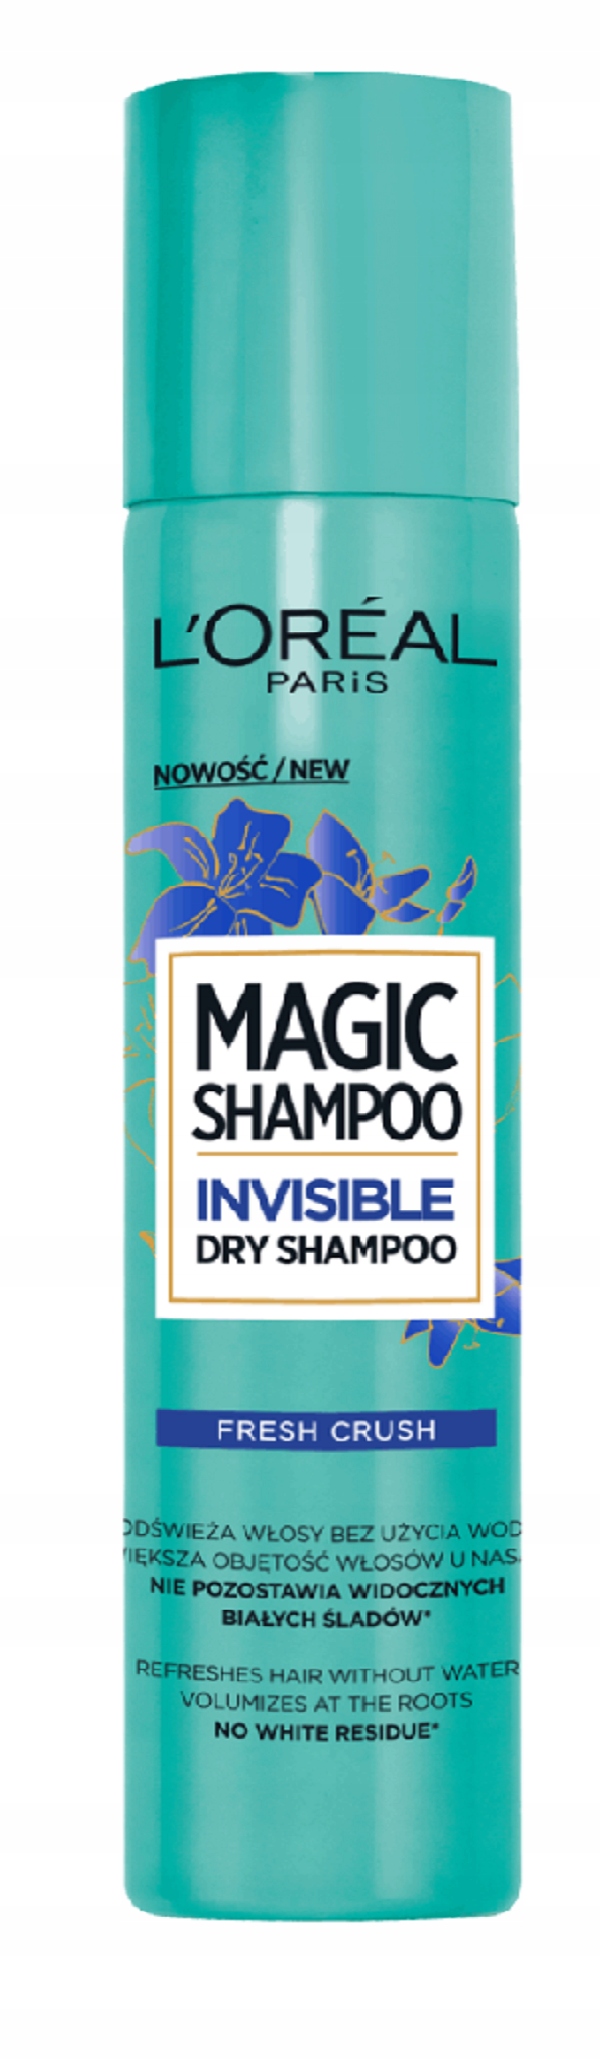 loreal niewidzialny suchy szampon